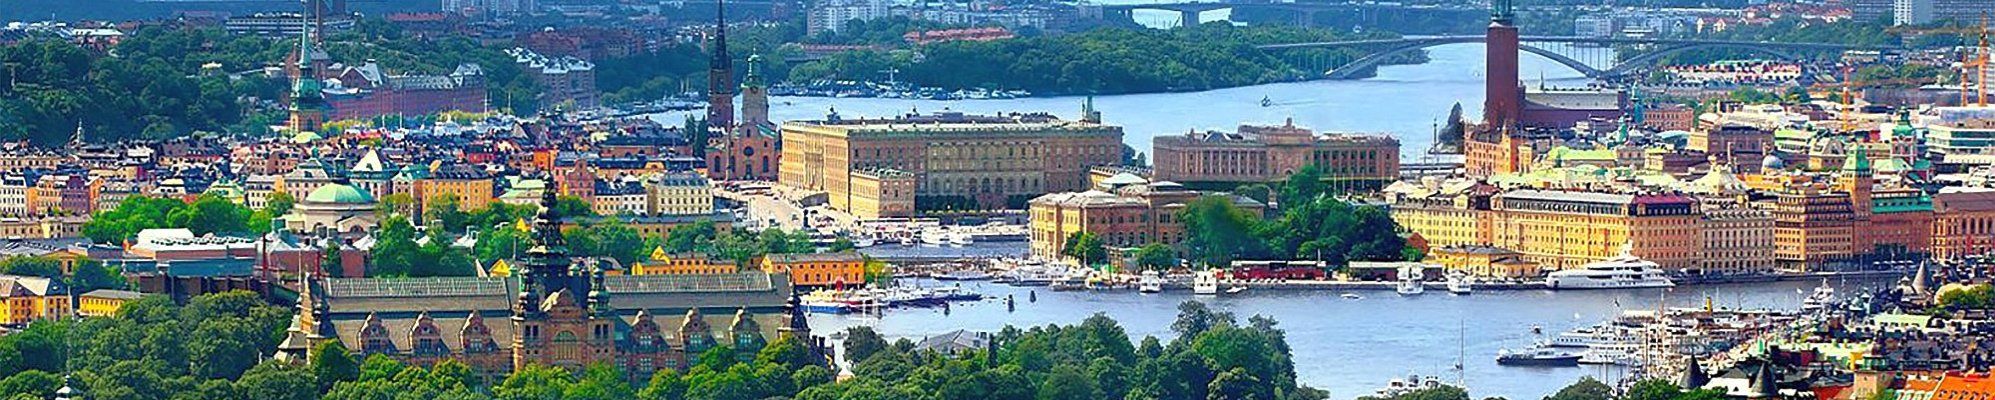 Stockholm © brightfreak auf Pixabay